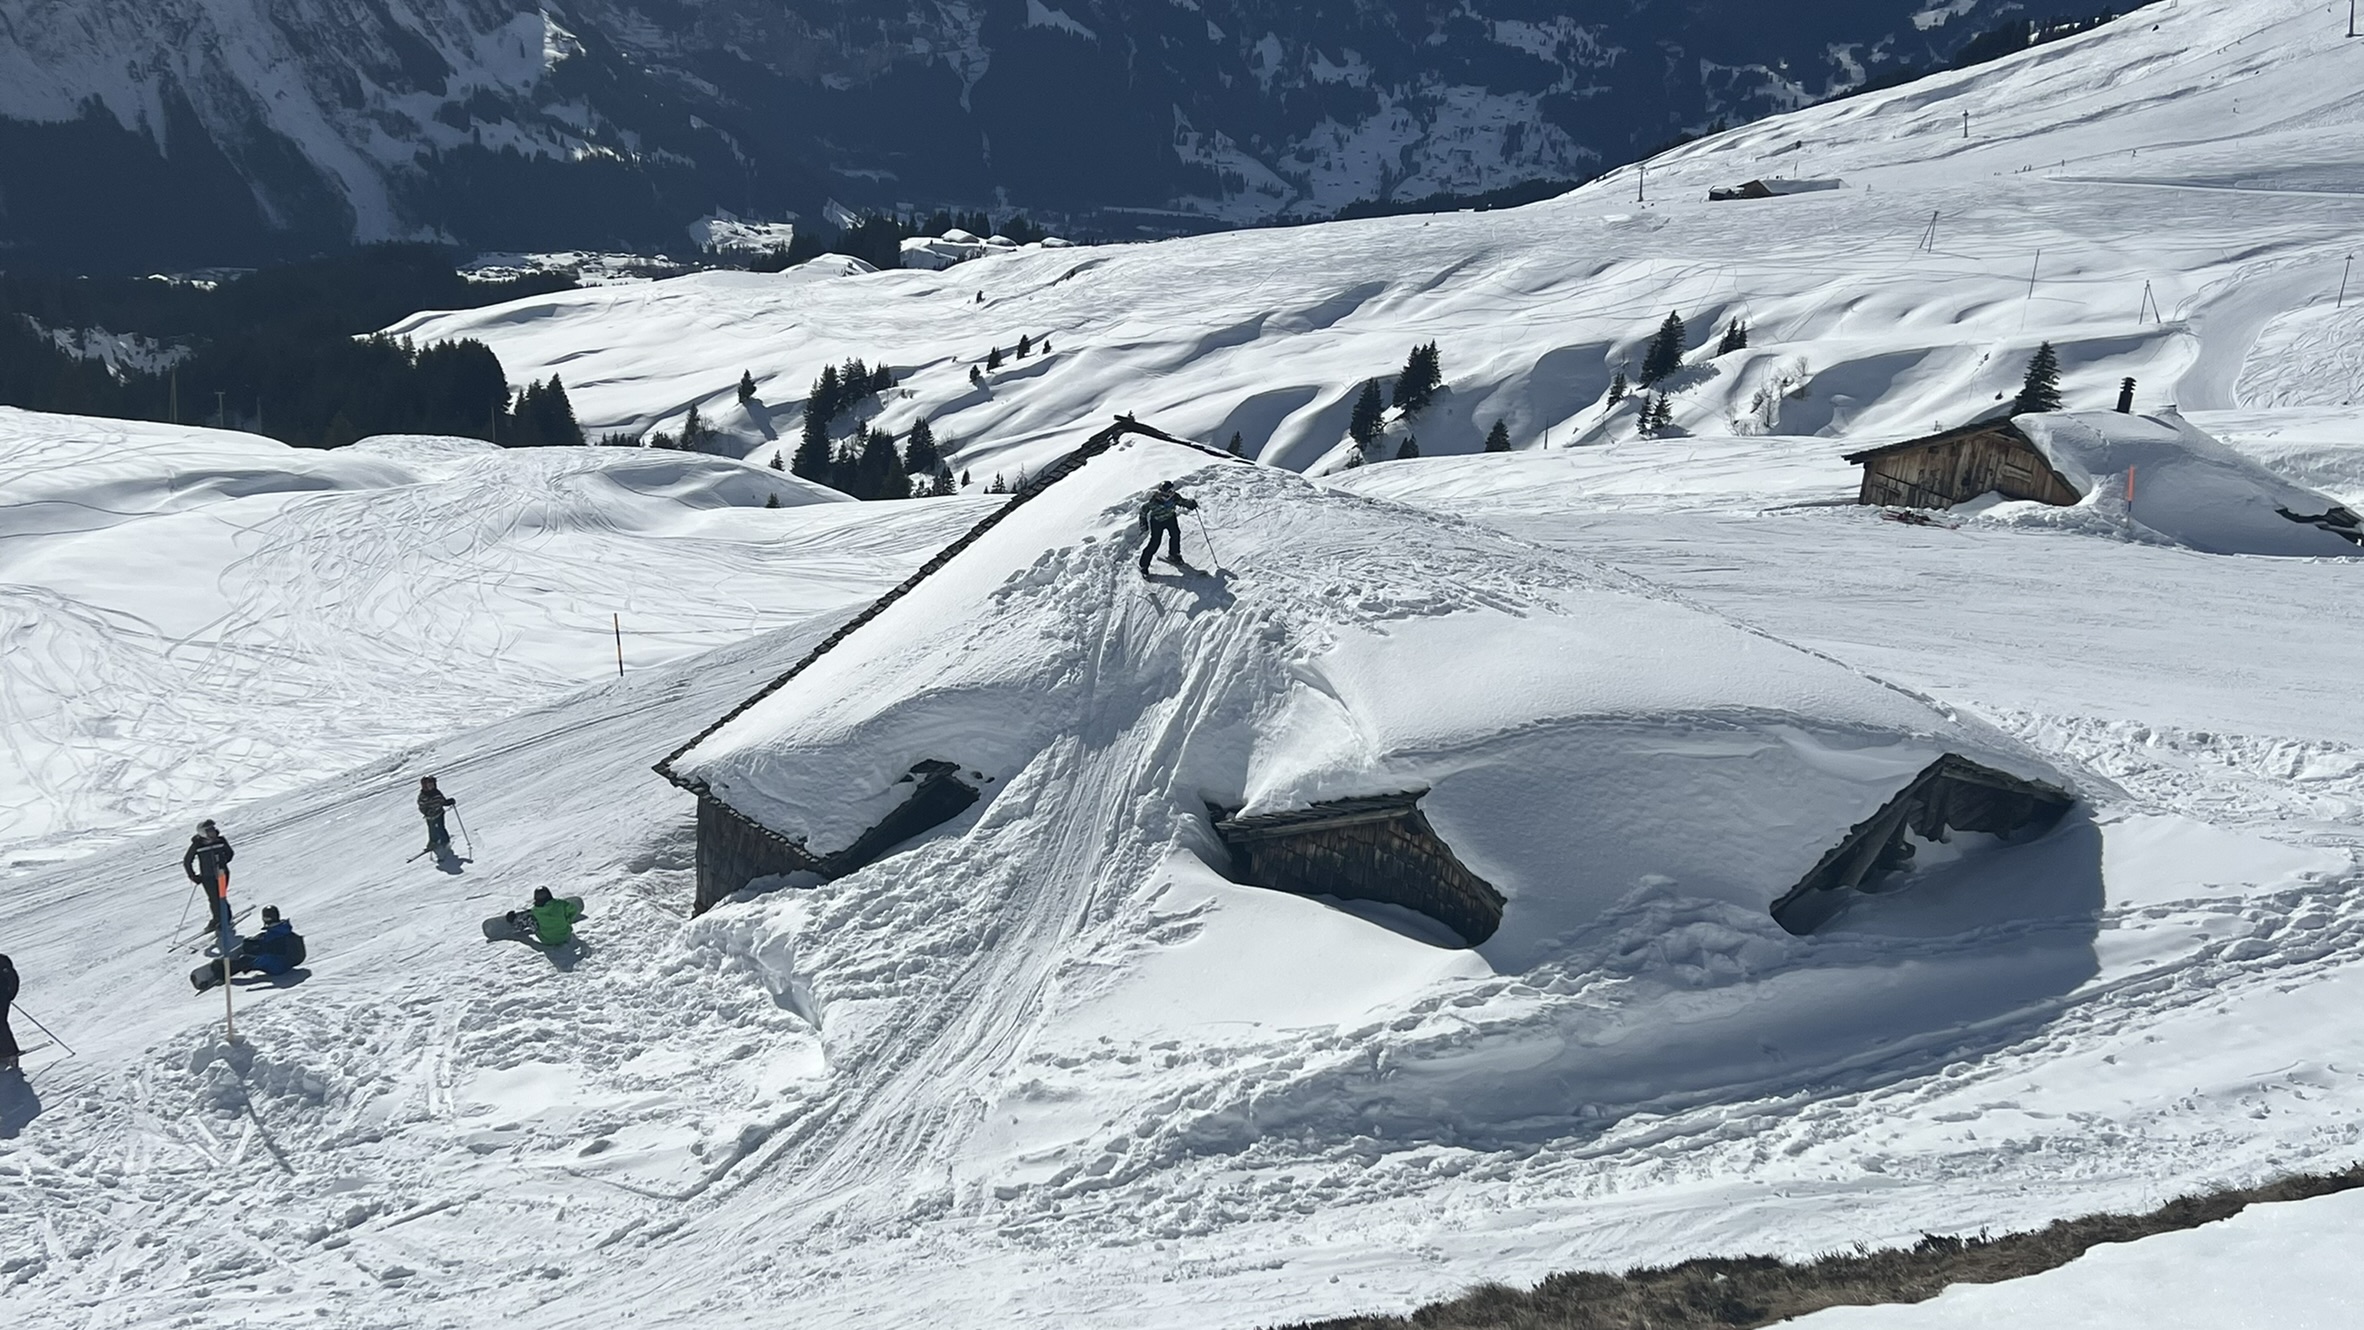 Pistes de ski enneigées avec des skieurs dessus